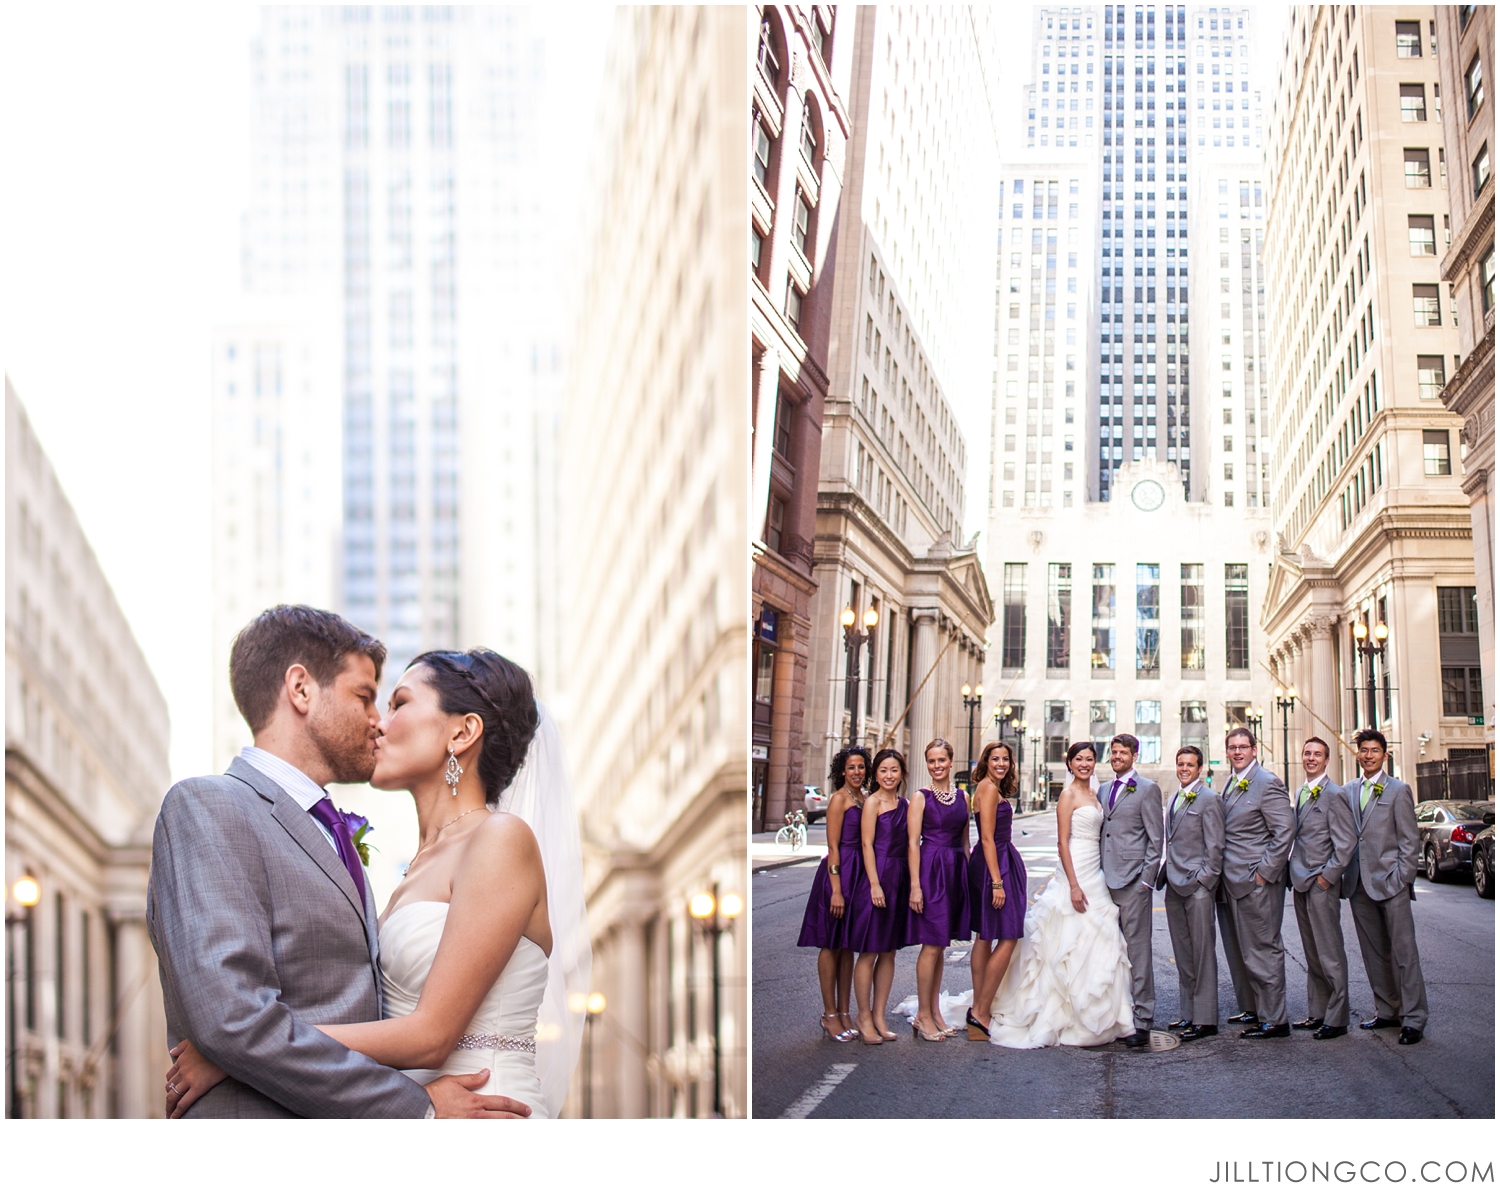 Board of Trade Wedding Photos | Chicago Engagement Photos | Chicago Engagement Photos Location Ideas | Jill Tiongco Photography